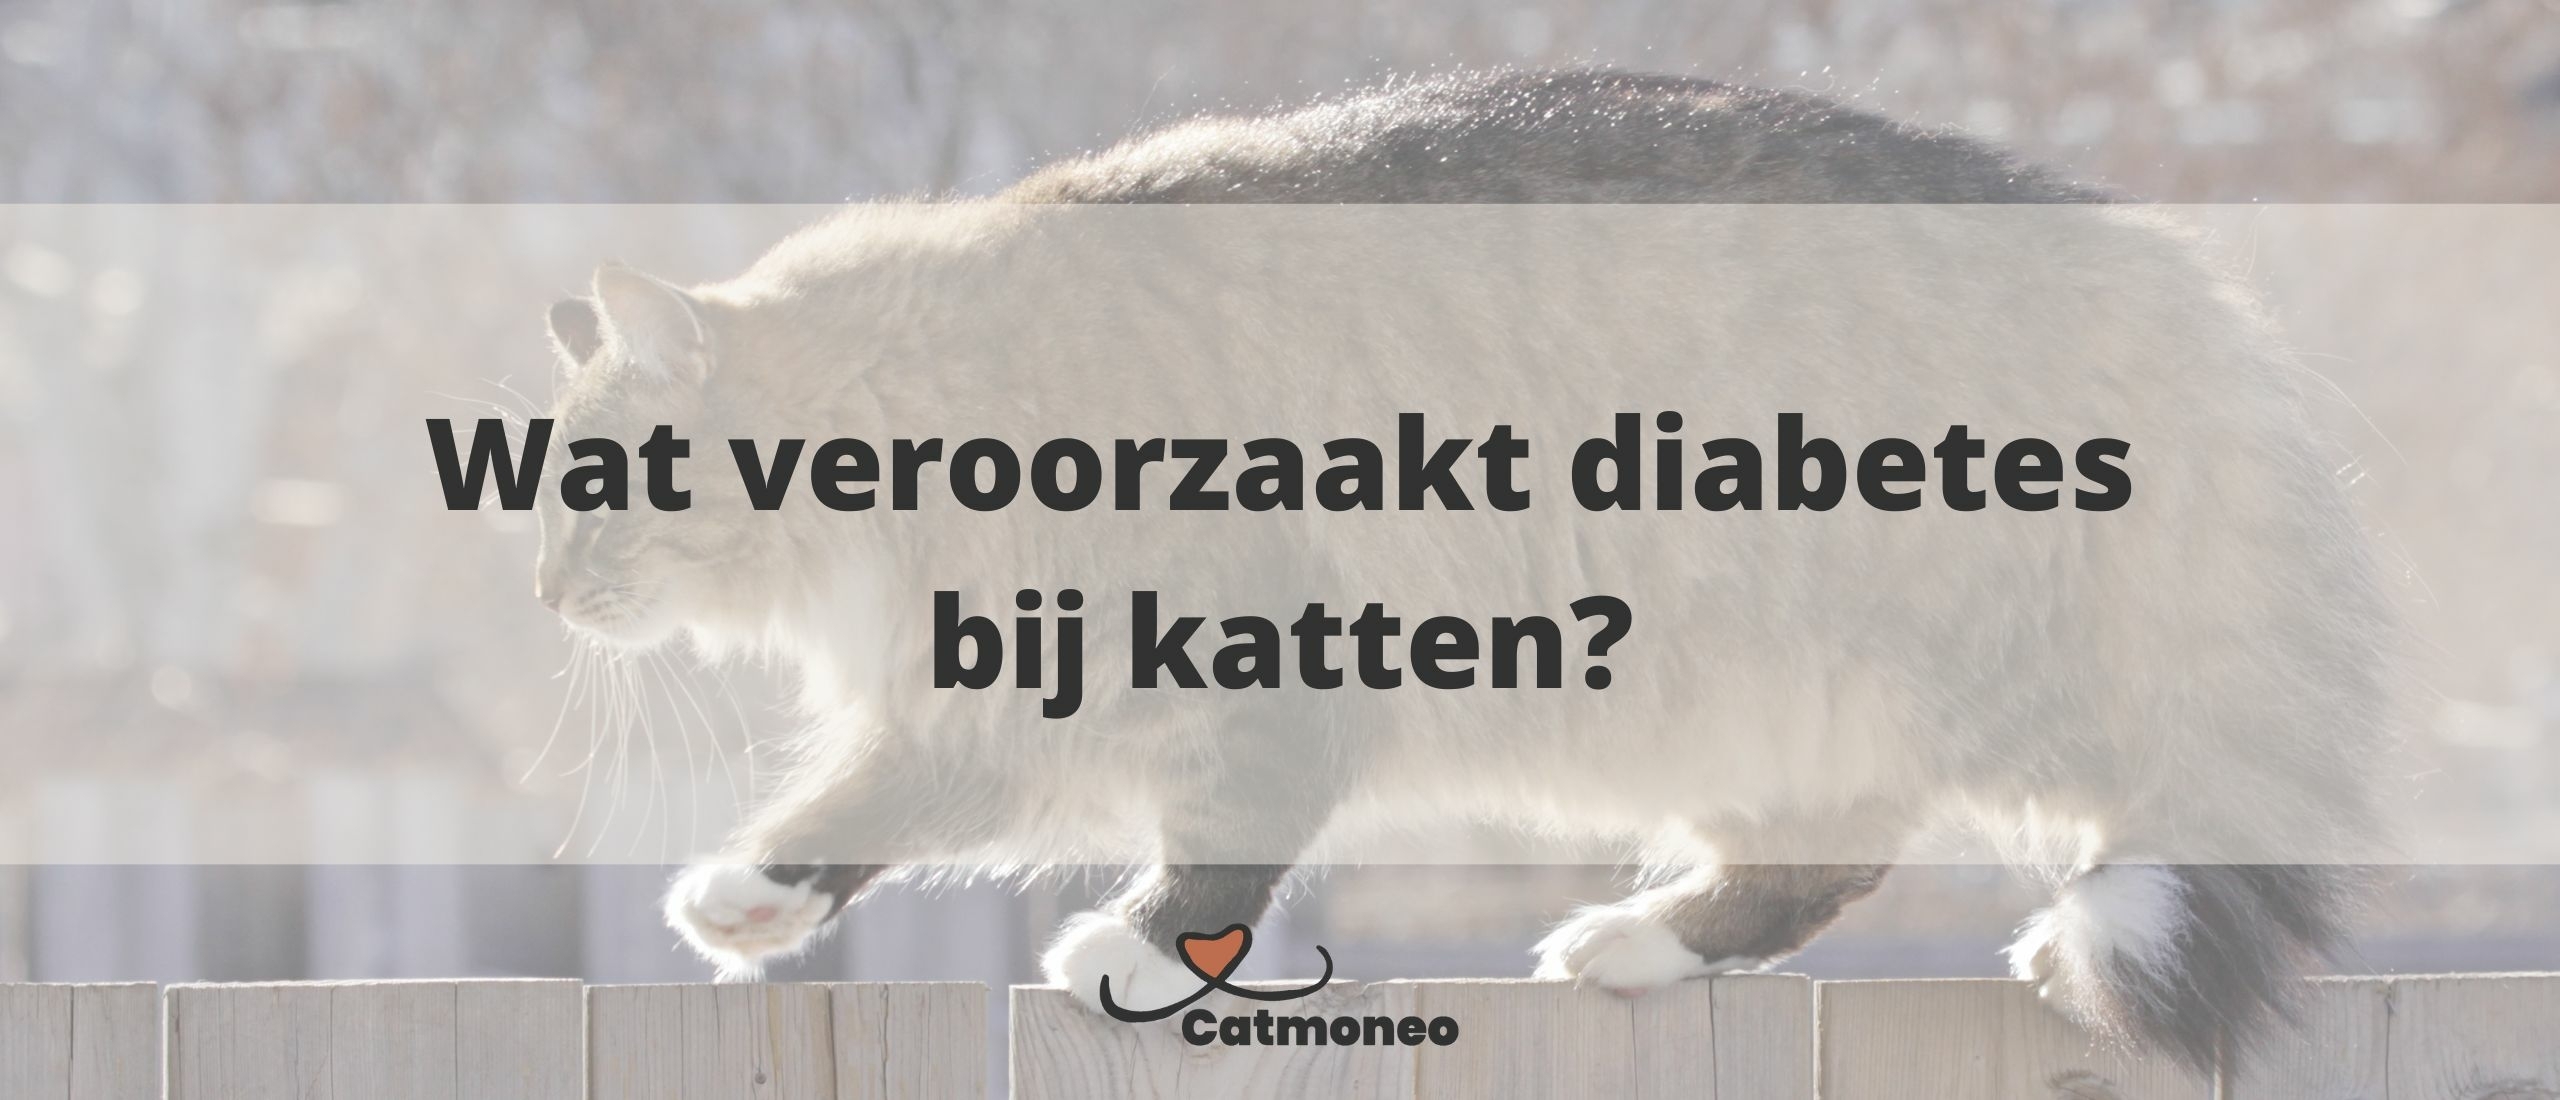 Suikerziekte: Wat veroorzaakt diabetes type 2 in katten?